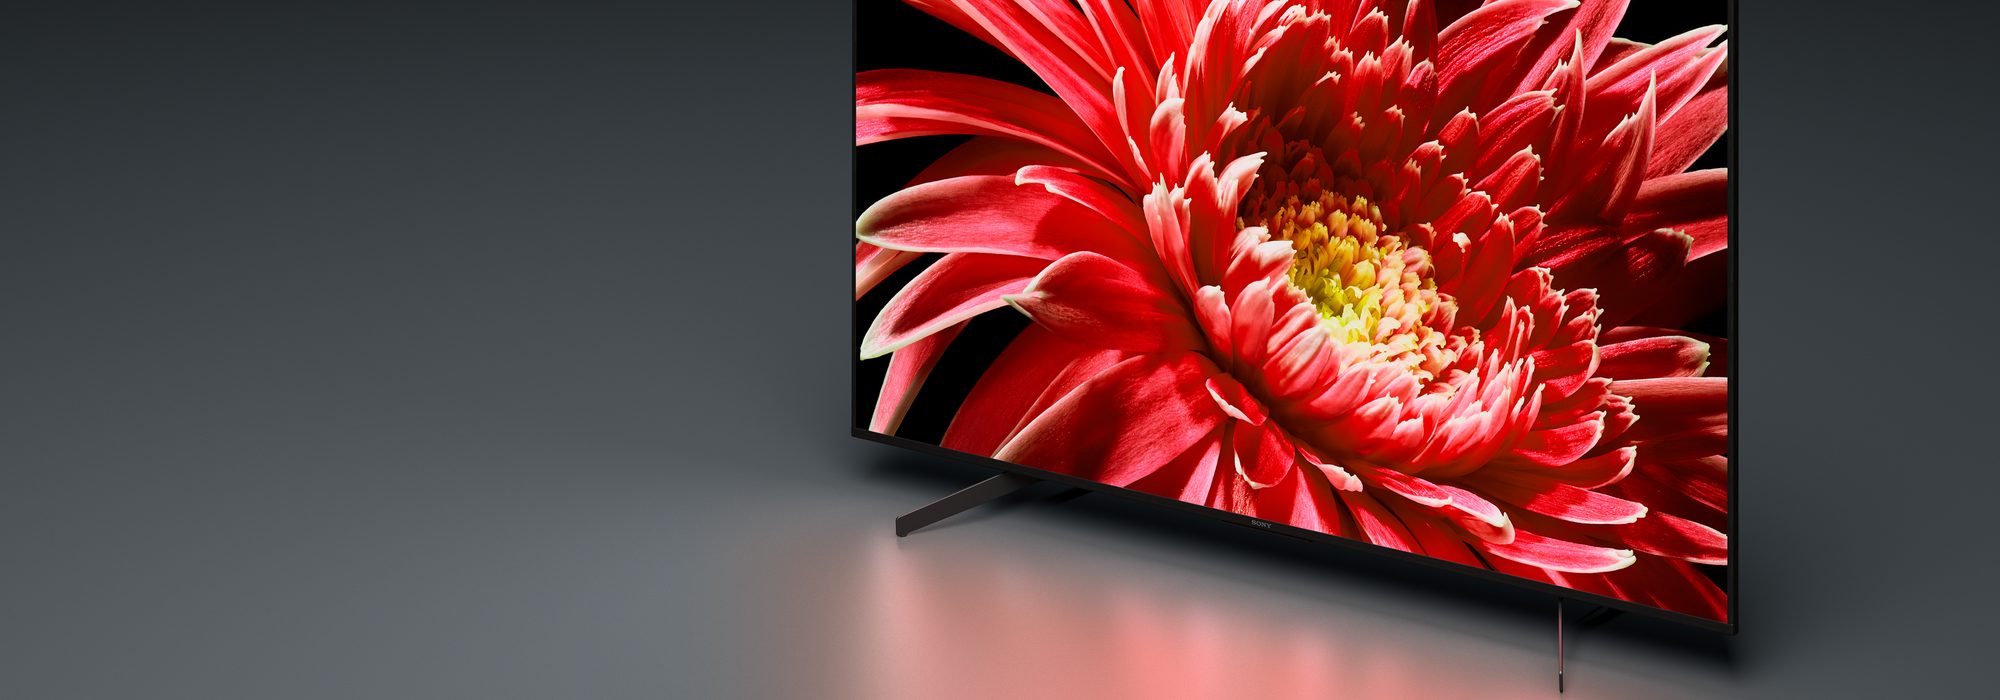 طراحی زیبای تلویزیون 65 اینچ سونی مدل 65X8500G